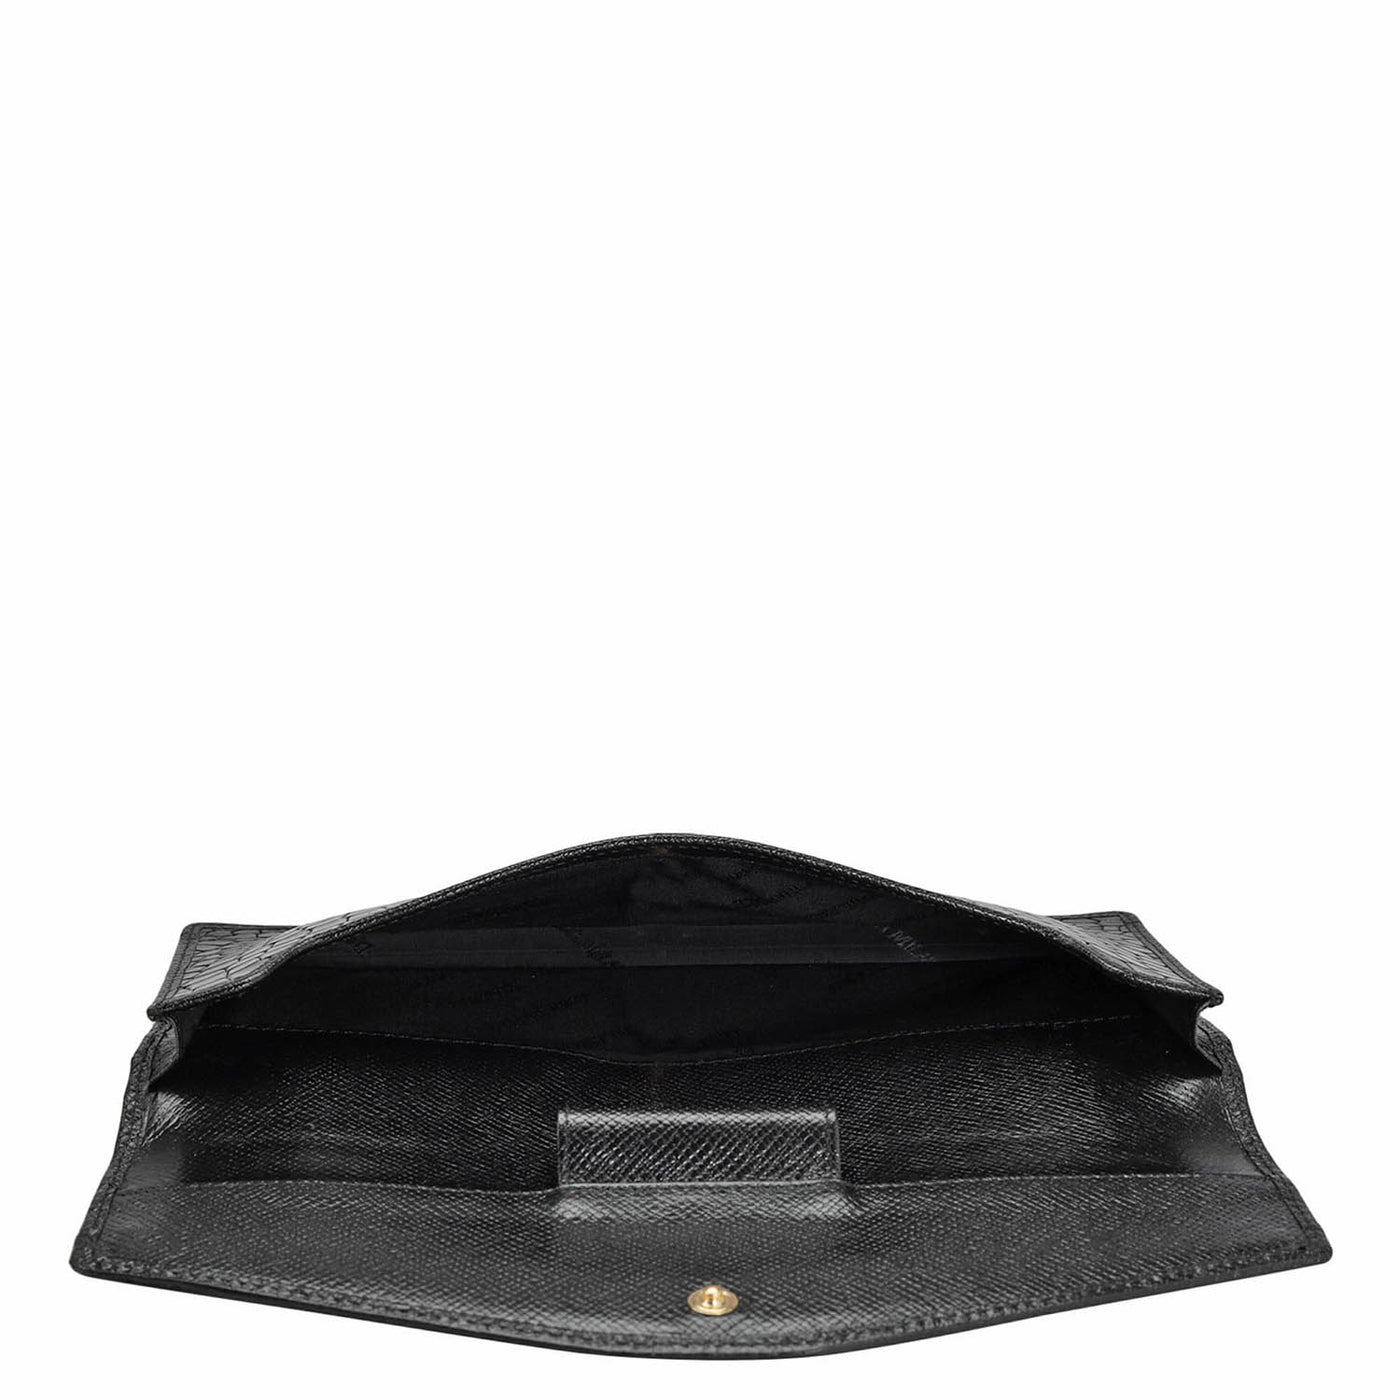 Croco Leather Cheque Book Cover - Black